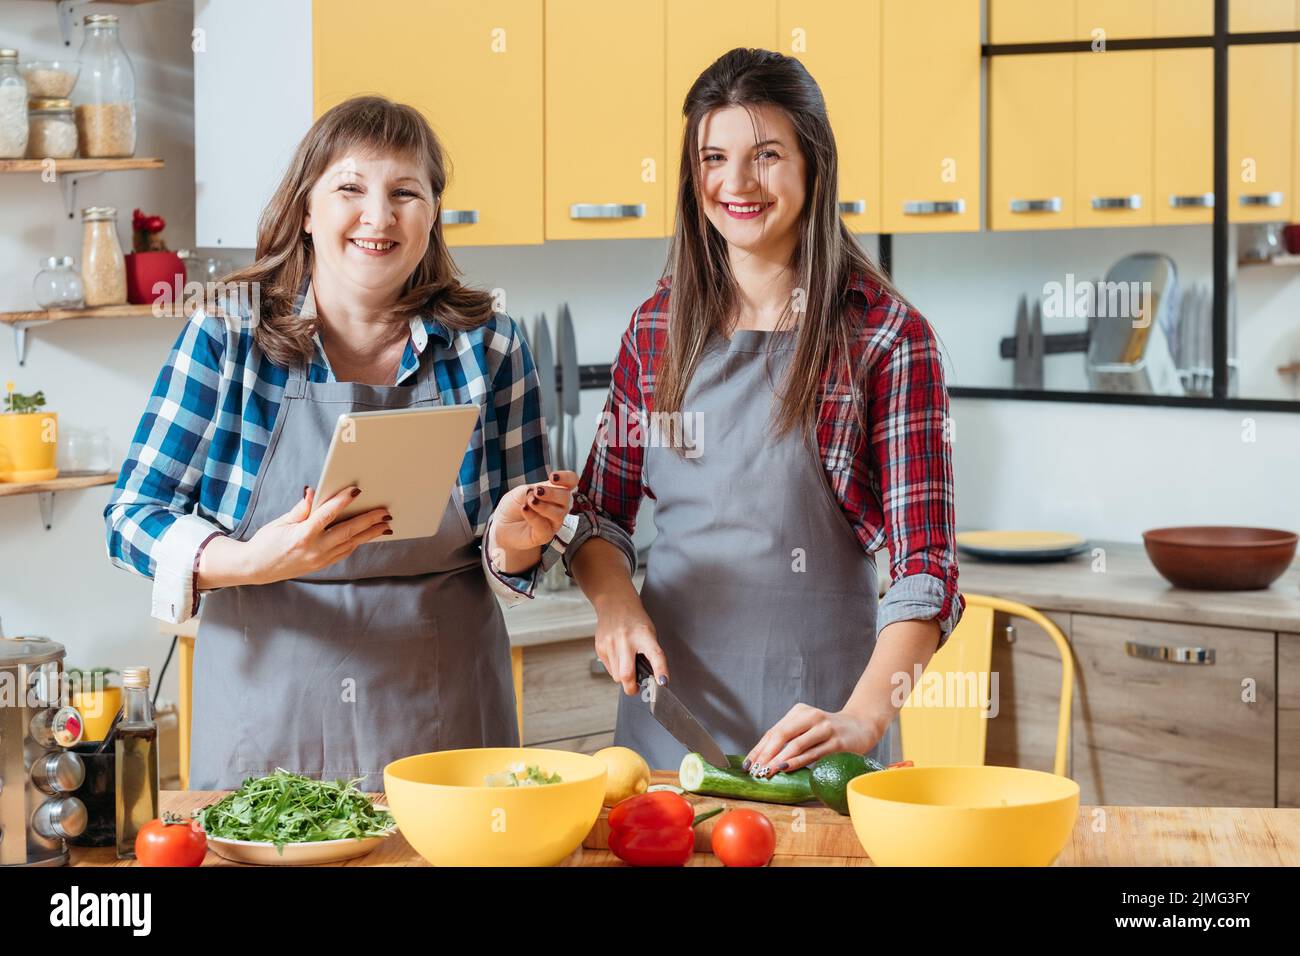 alimentation saine cuisine familiale loisirs nouvelle recette Banque D'Images